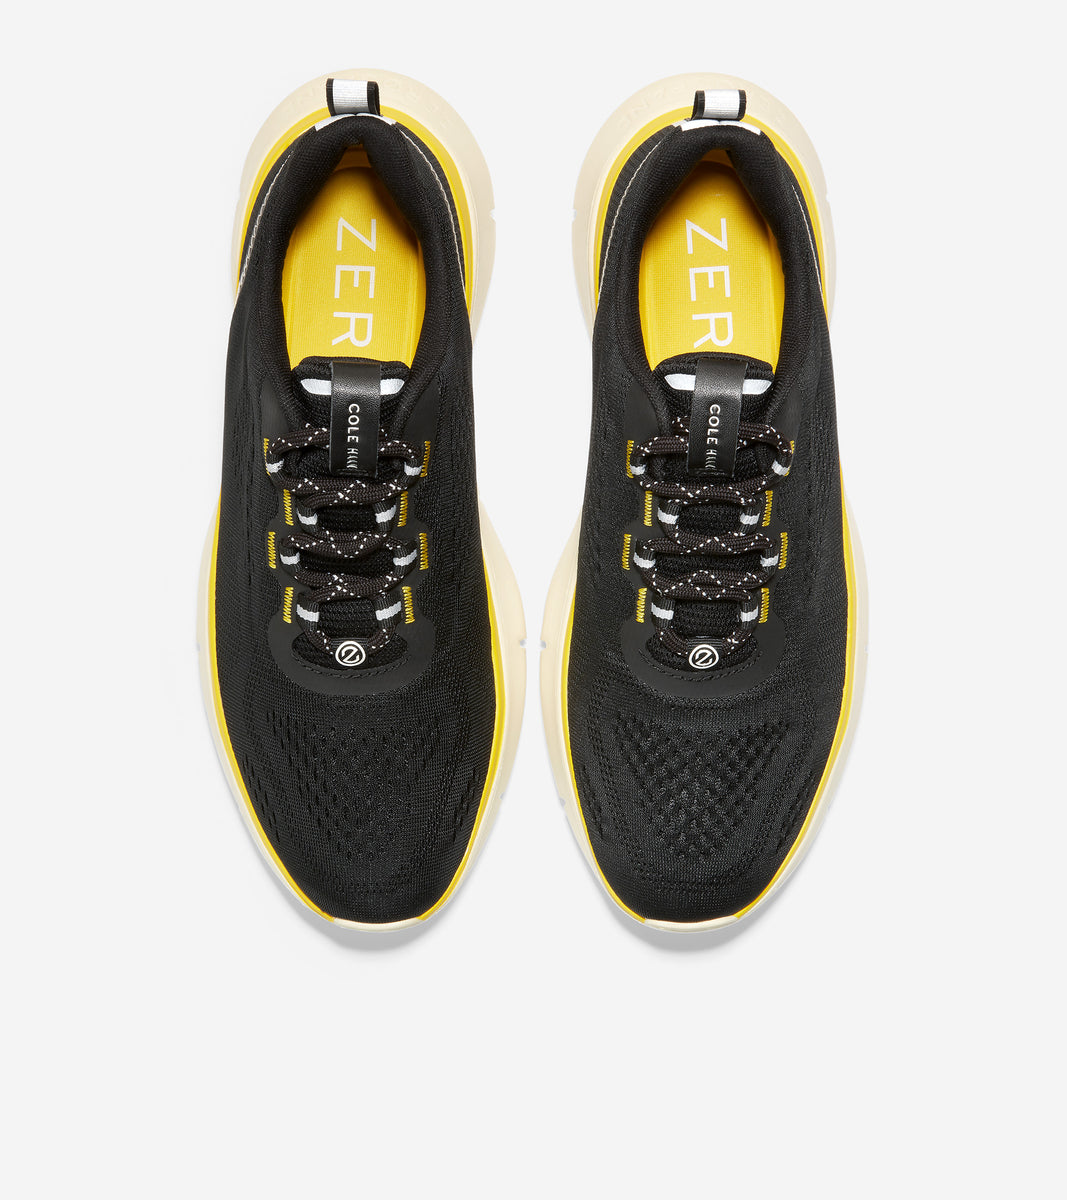 ColeHaan-ZERØGRAND Journey Running Sneaker-c34216-Black-Cyber Yellow